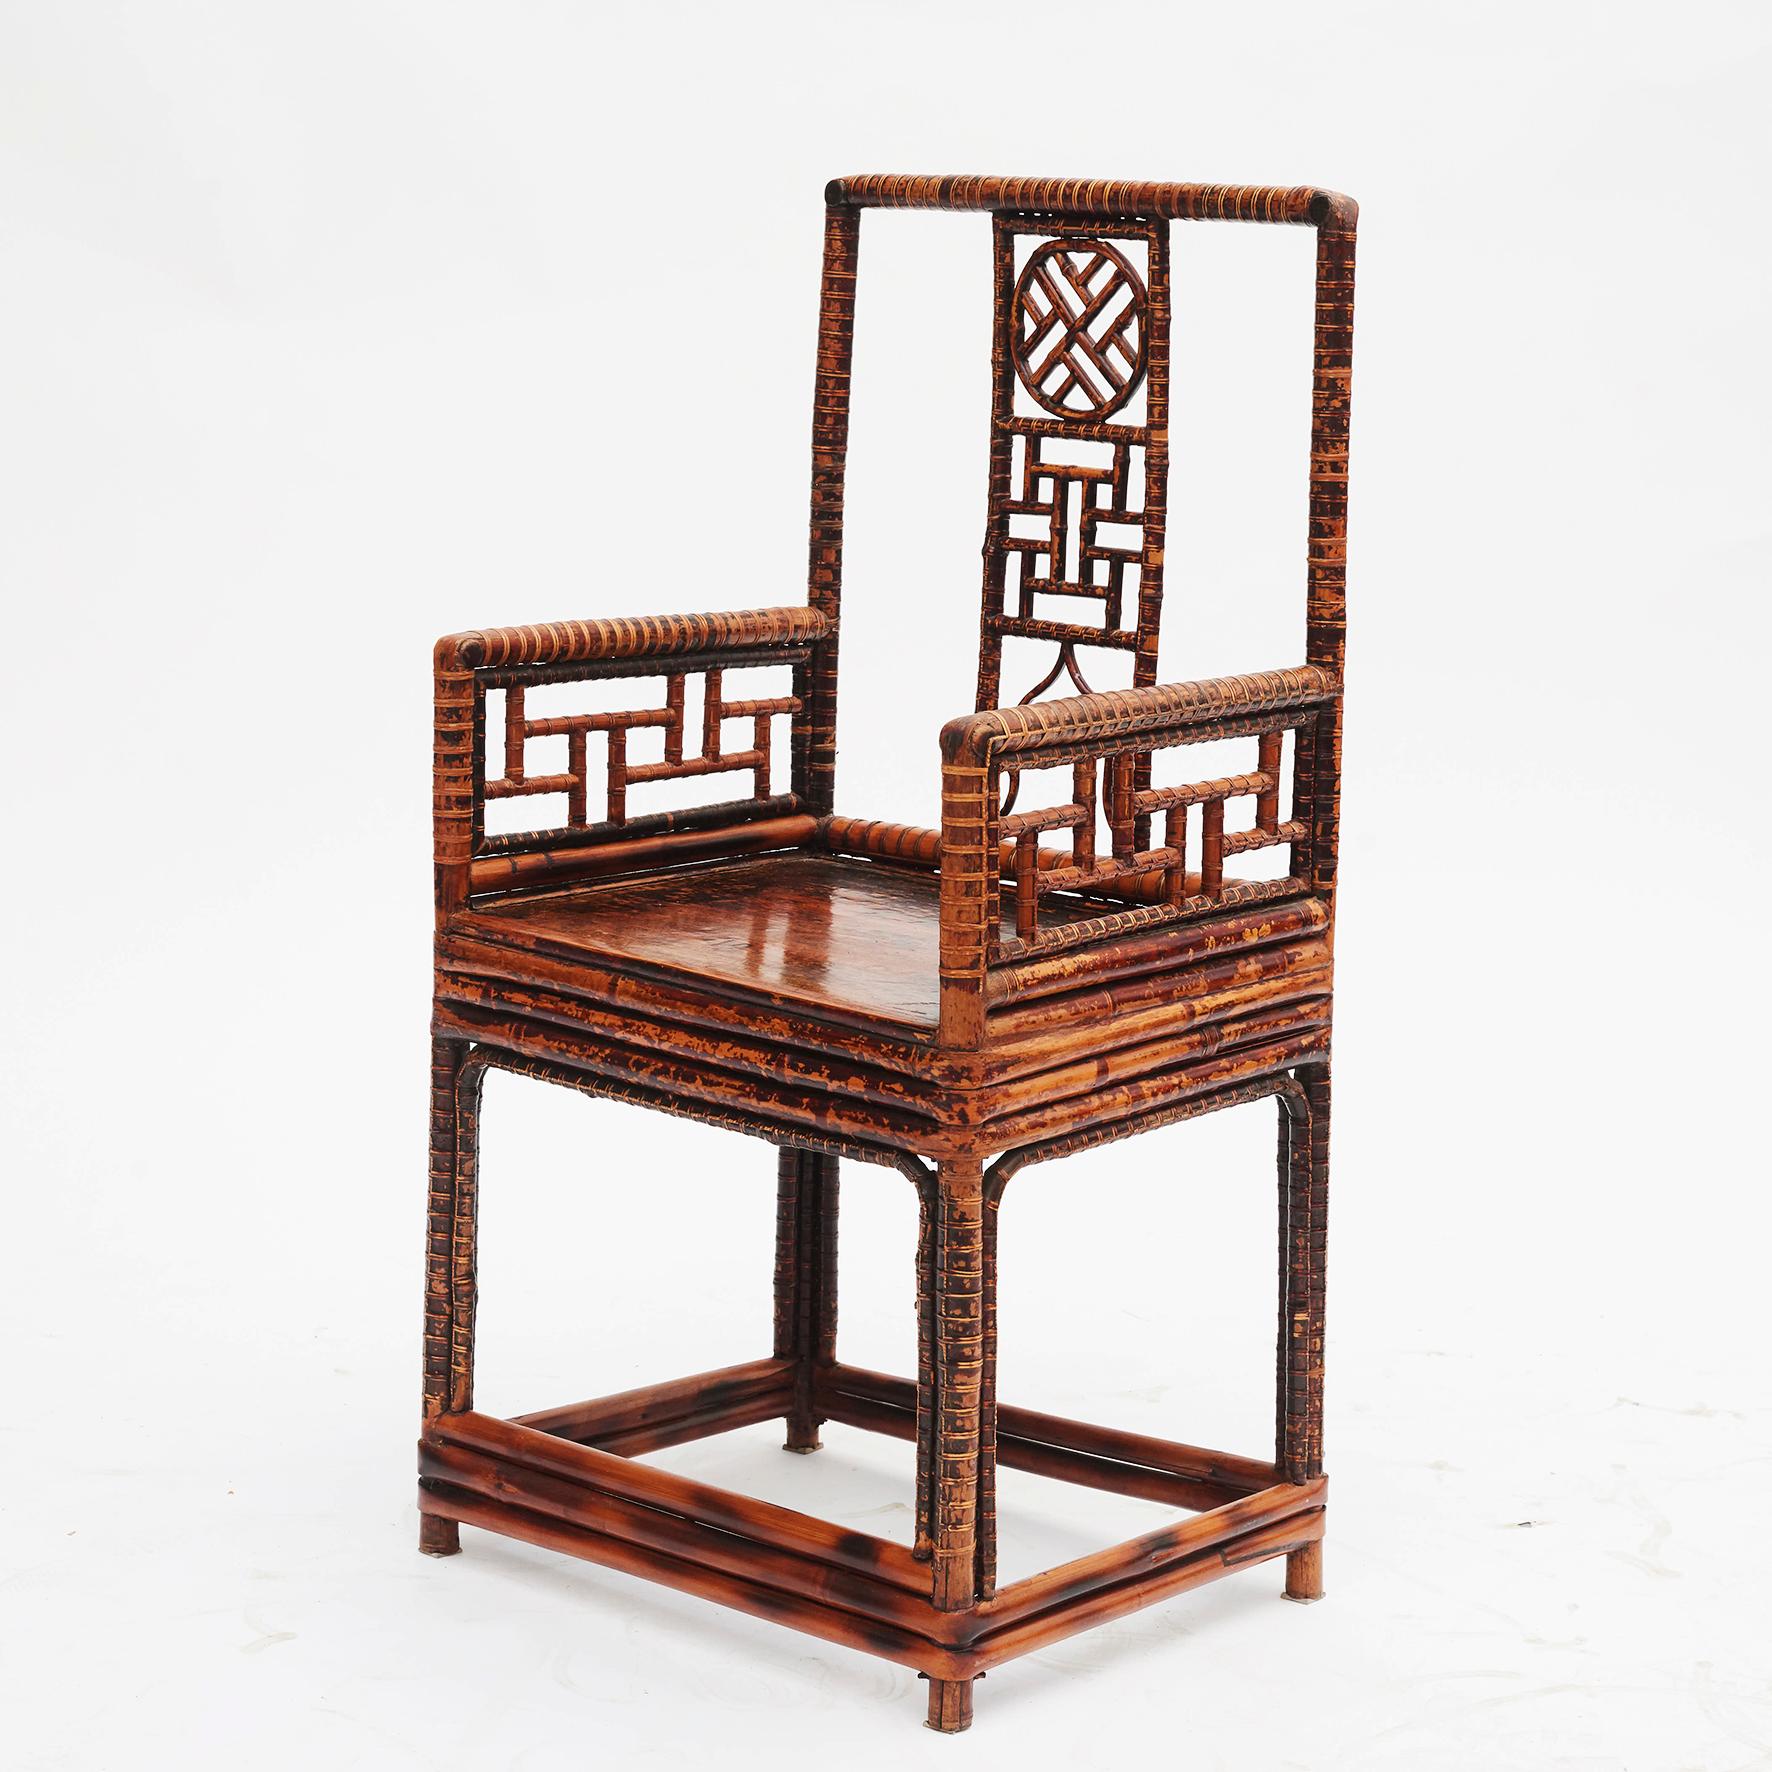 chinesischer Bambussessel aus dem 19. Jahrhundert mit einem flachen Holzsitz.
China, um 1840.
Gute Qualität und Handwerkskunst.